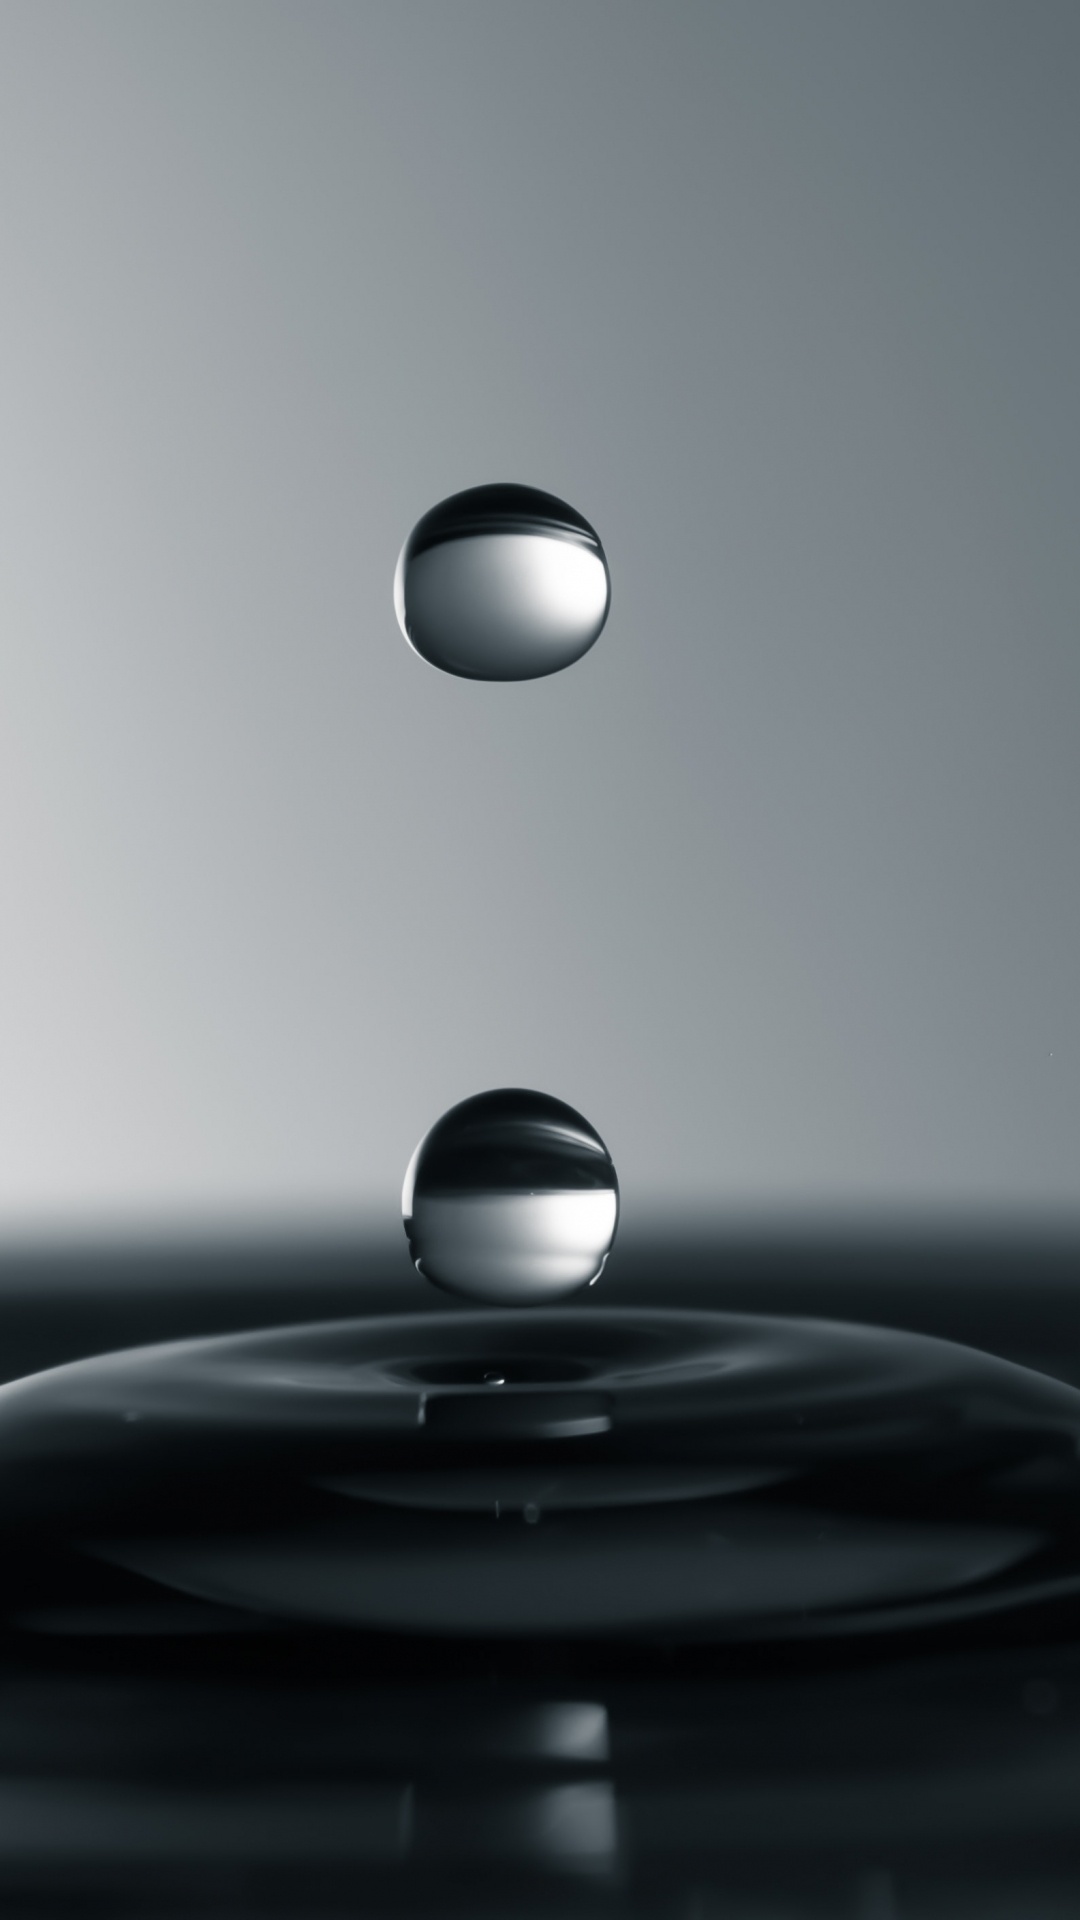 Drop, Water, Liquid, Water Resources, Sphere. Wallpaper in 1080x1920 Resolution